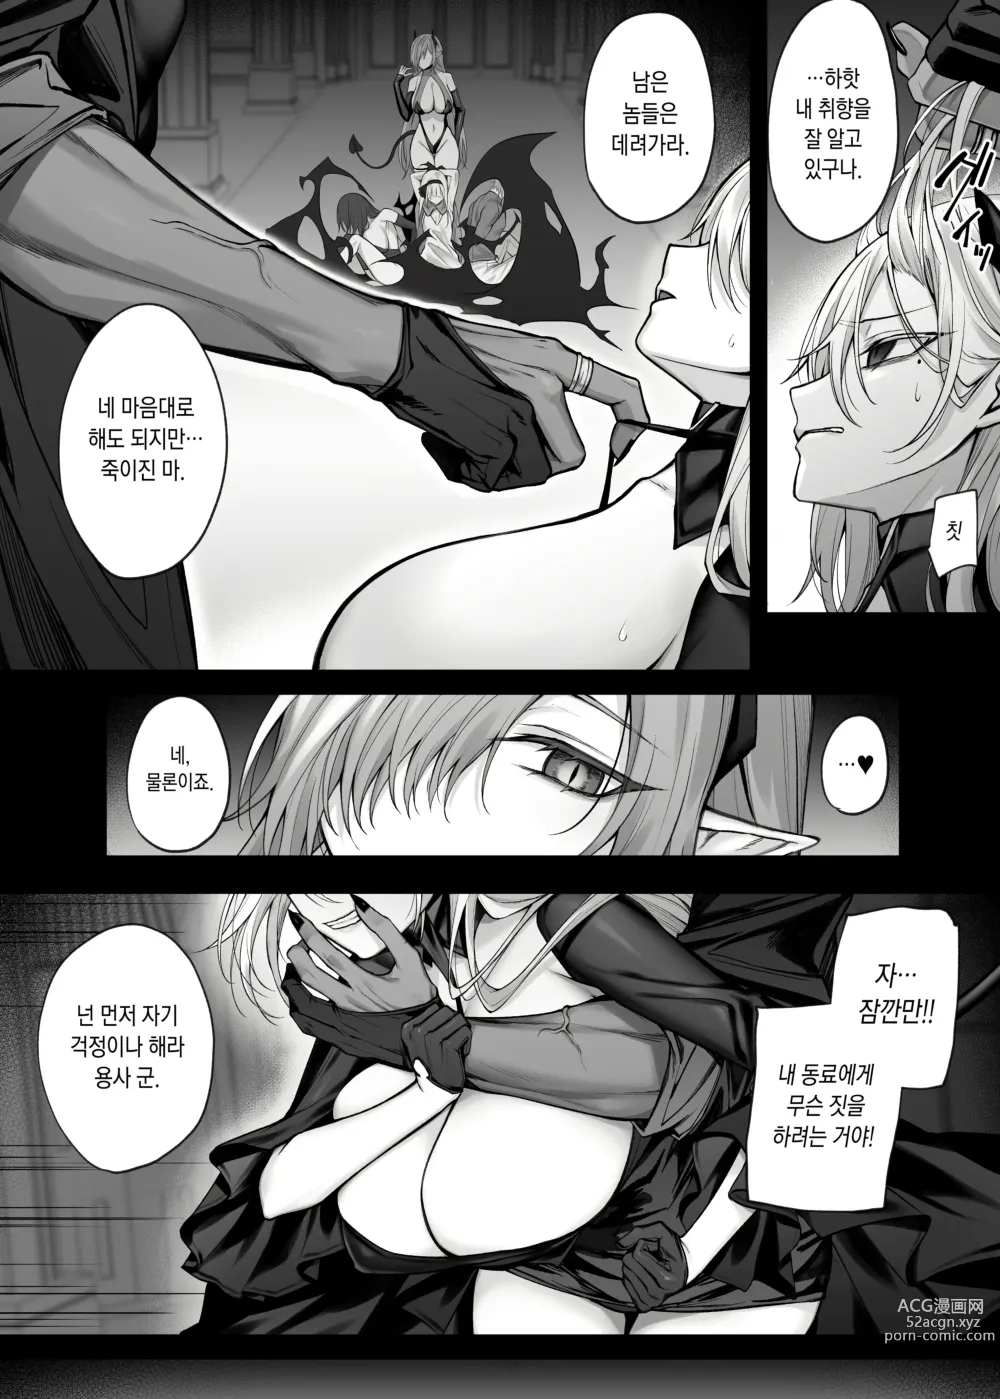 Page 7 of doujinshi 최강용사인 내가 TS마법으로 마왕을 진심으로 사랑하는 암컷음마가 될 리 없어